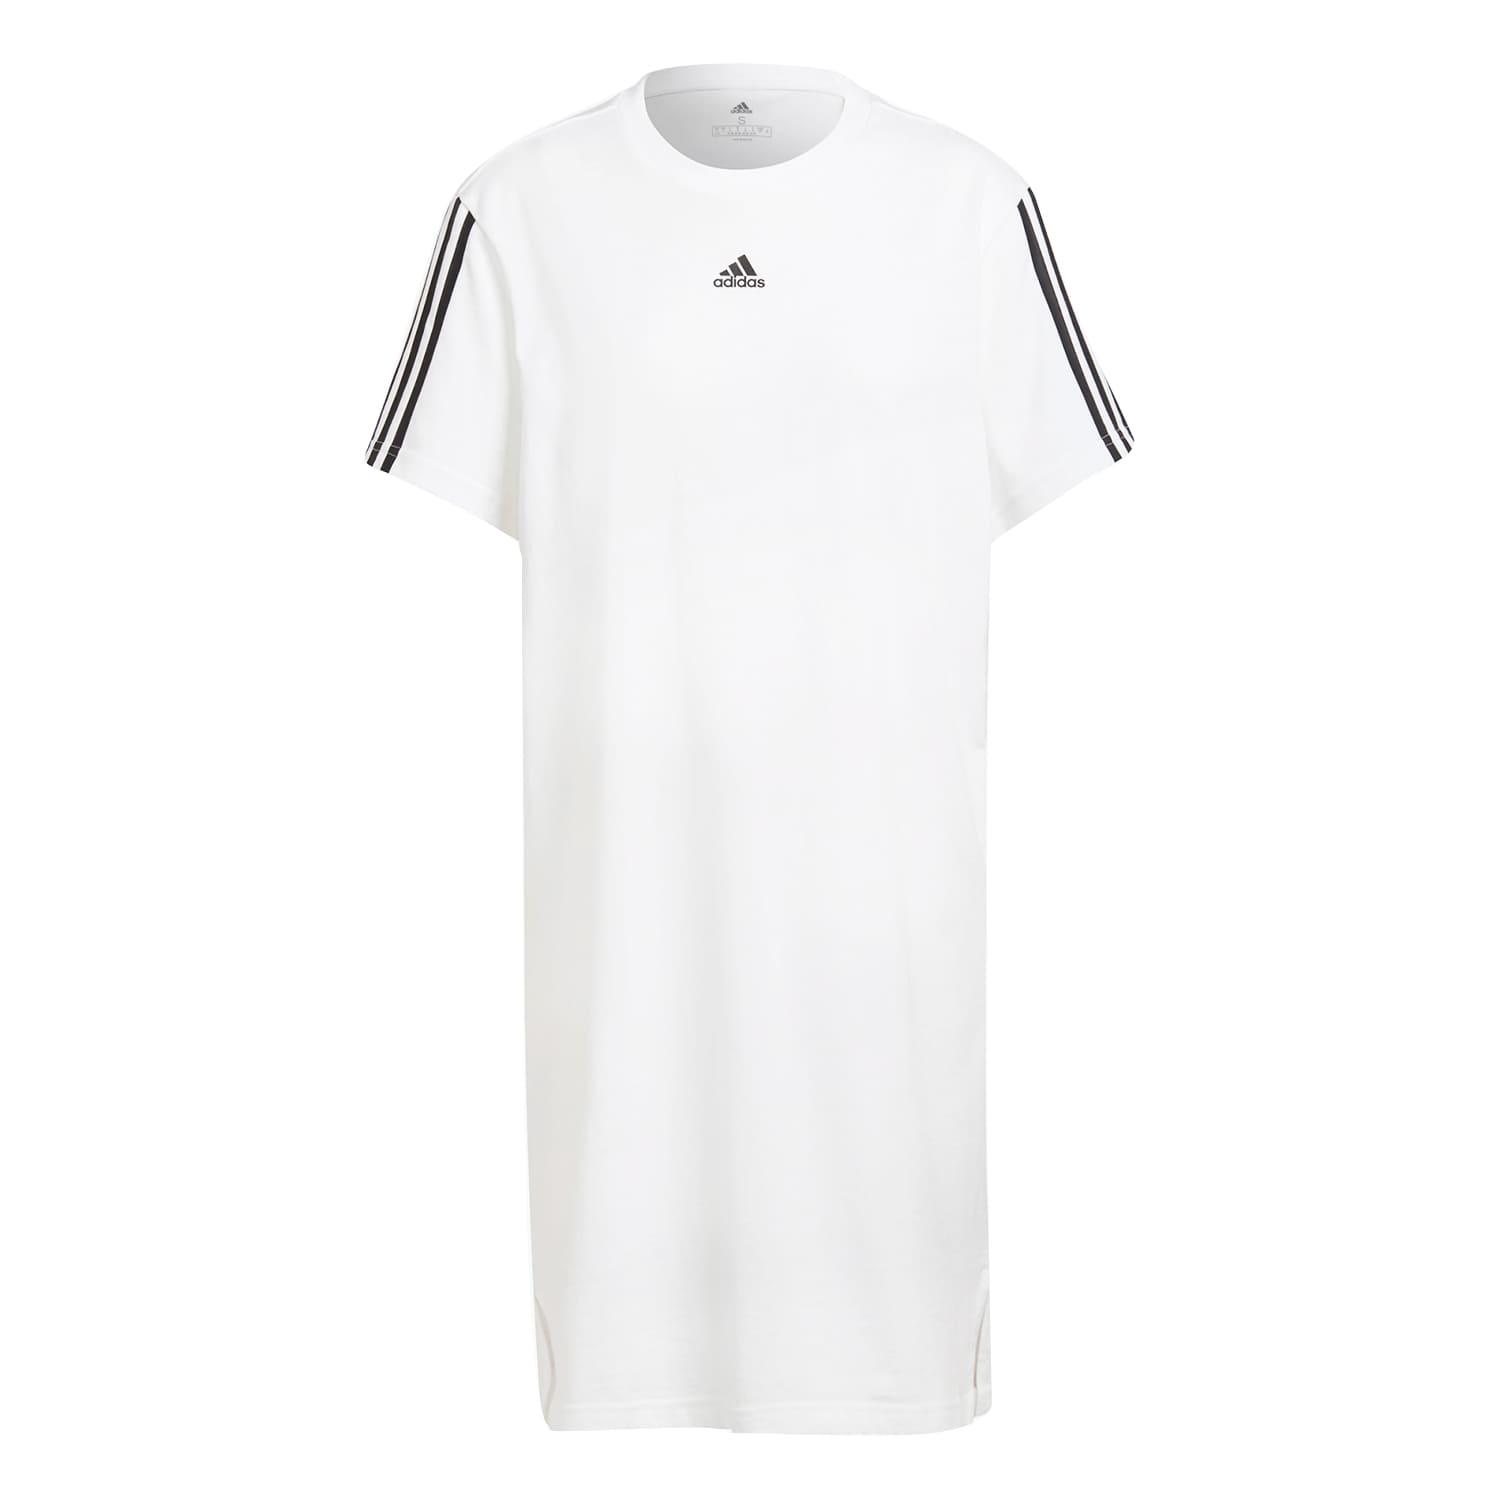 アディダス レディース Tシャツ ワンピース Tシャツワンピ チュニック シンプル 半袖 無地 ブラック ホワイト adidas スポーツブランド  ゆったり